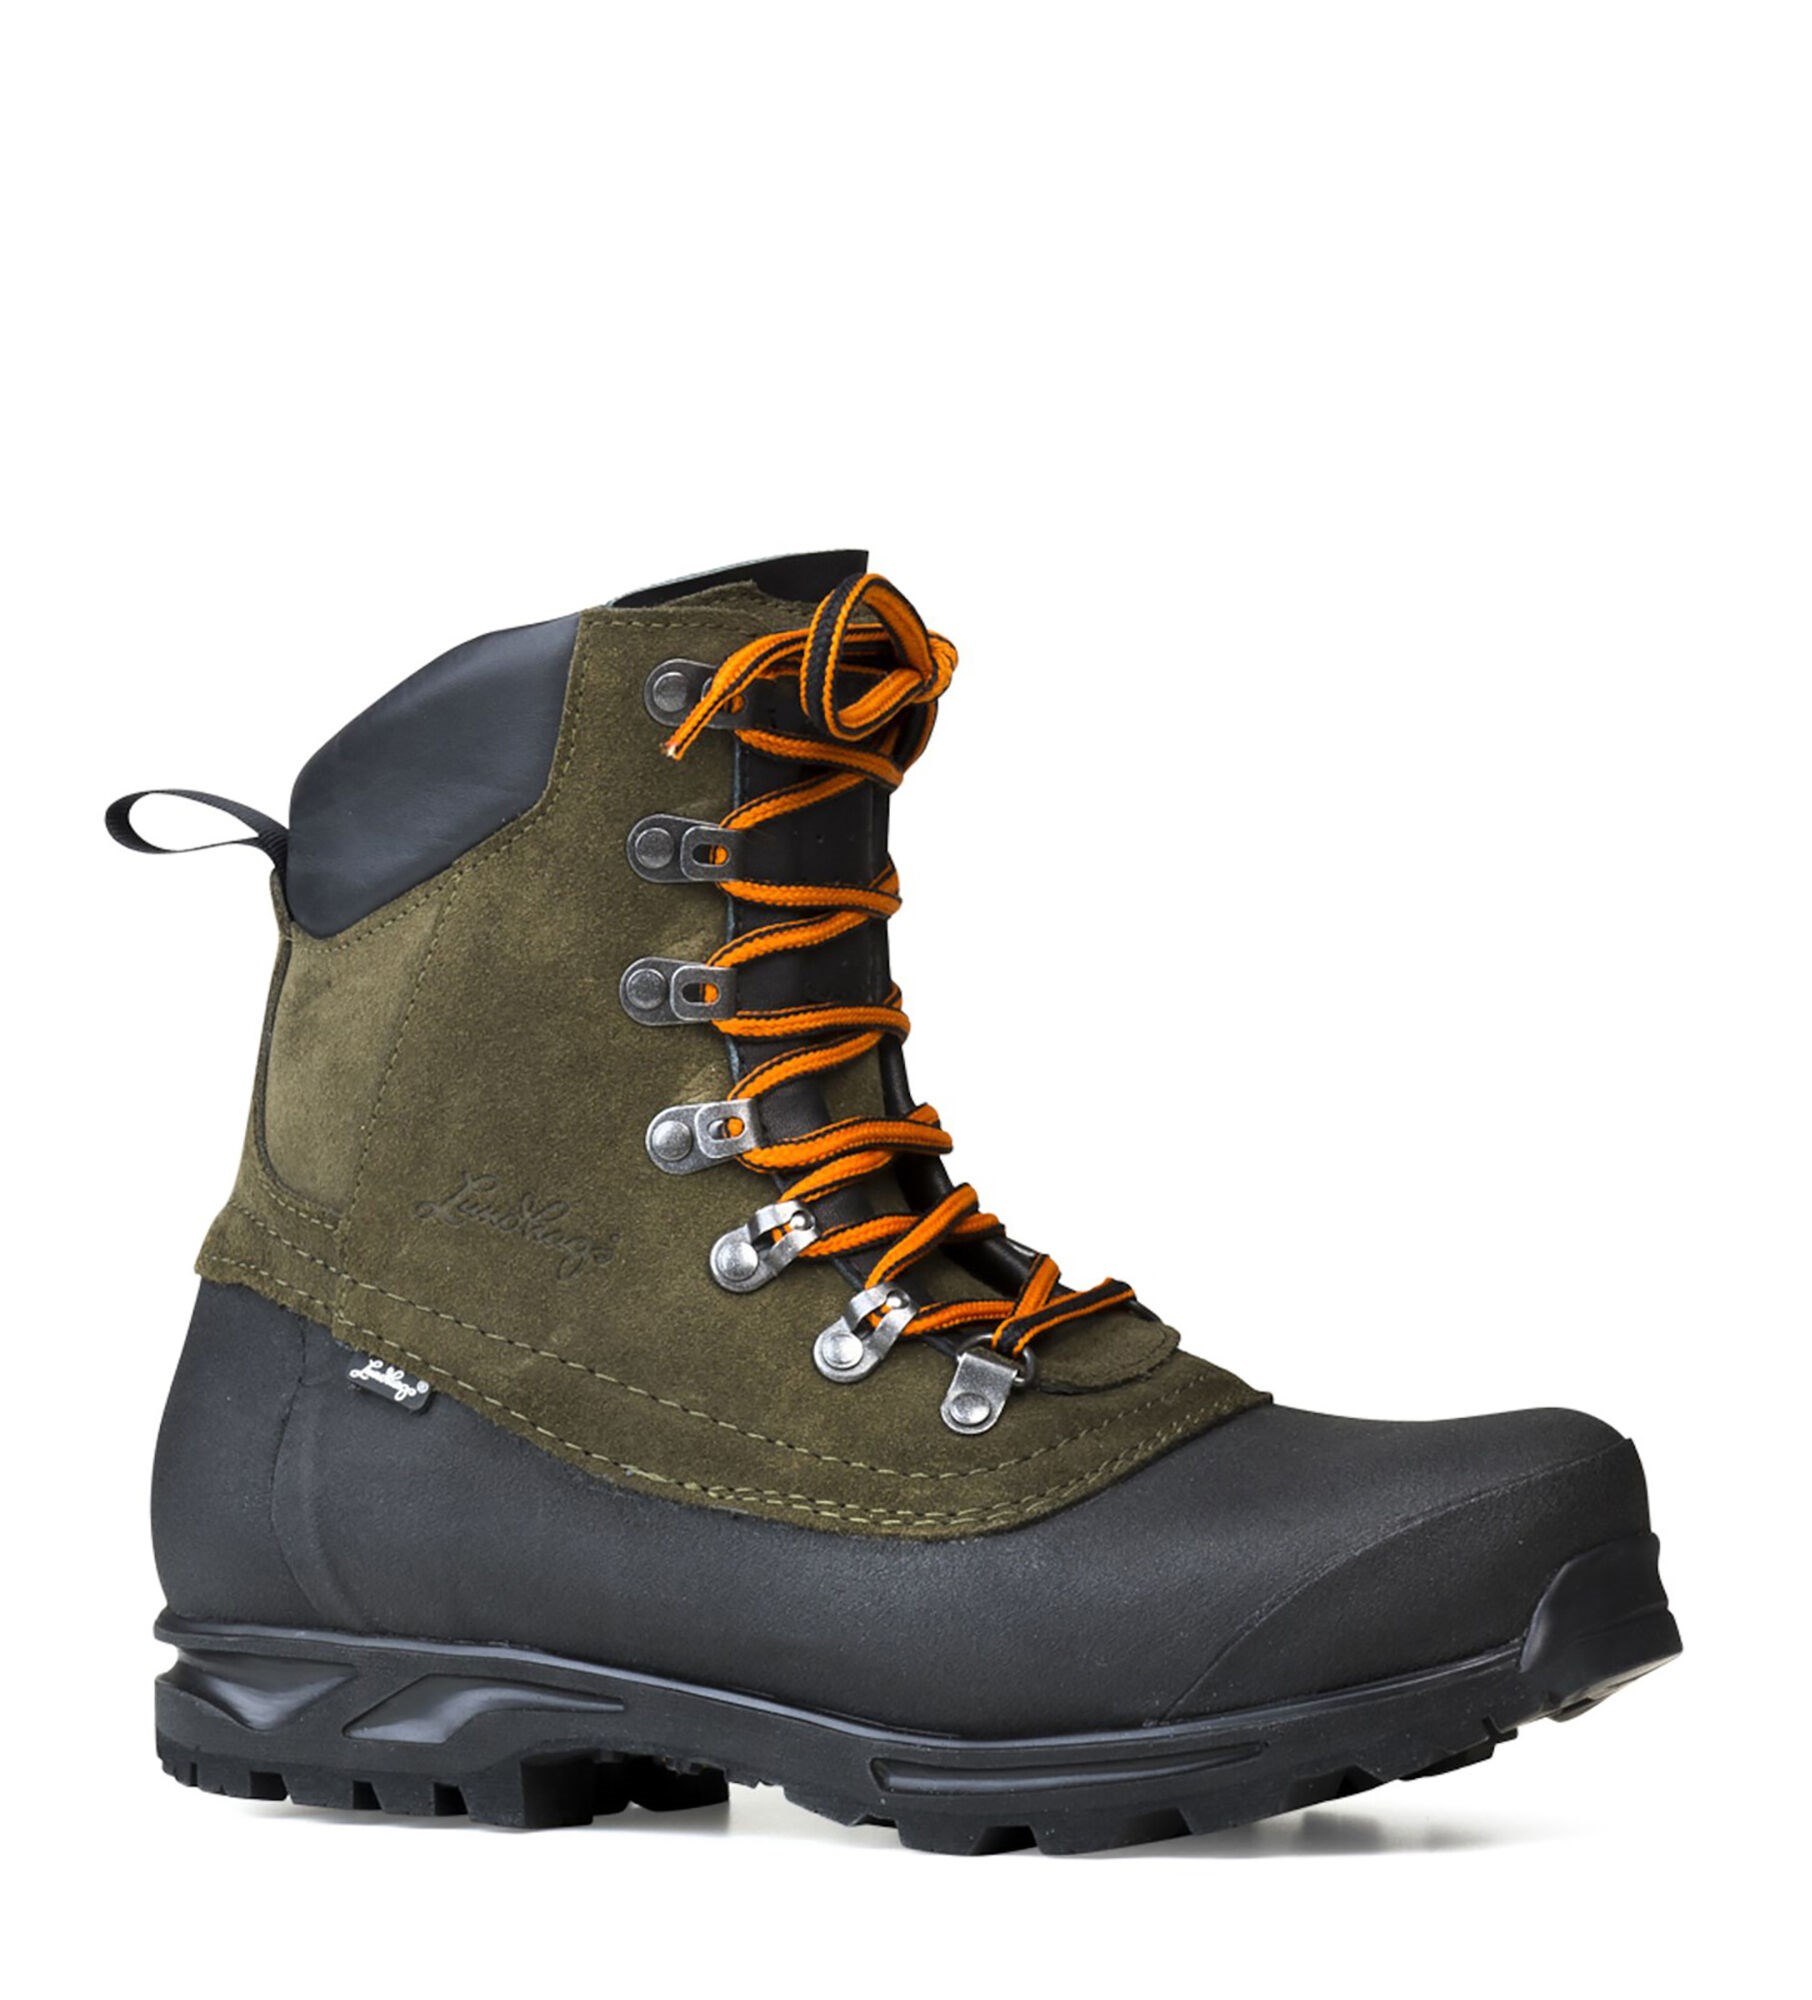 Tjakke Mid Hiking Boots Unisex